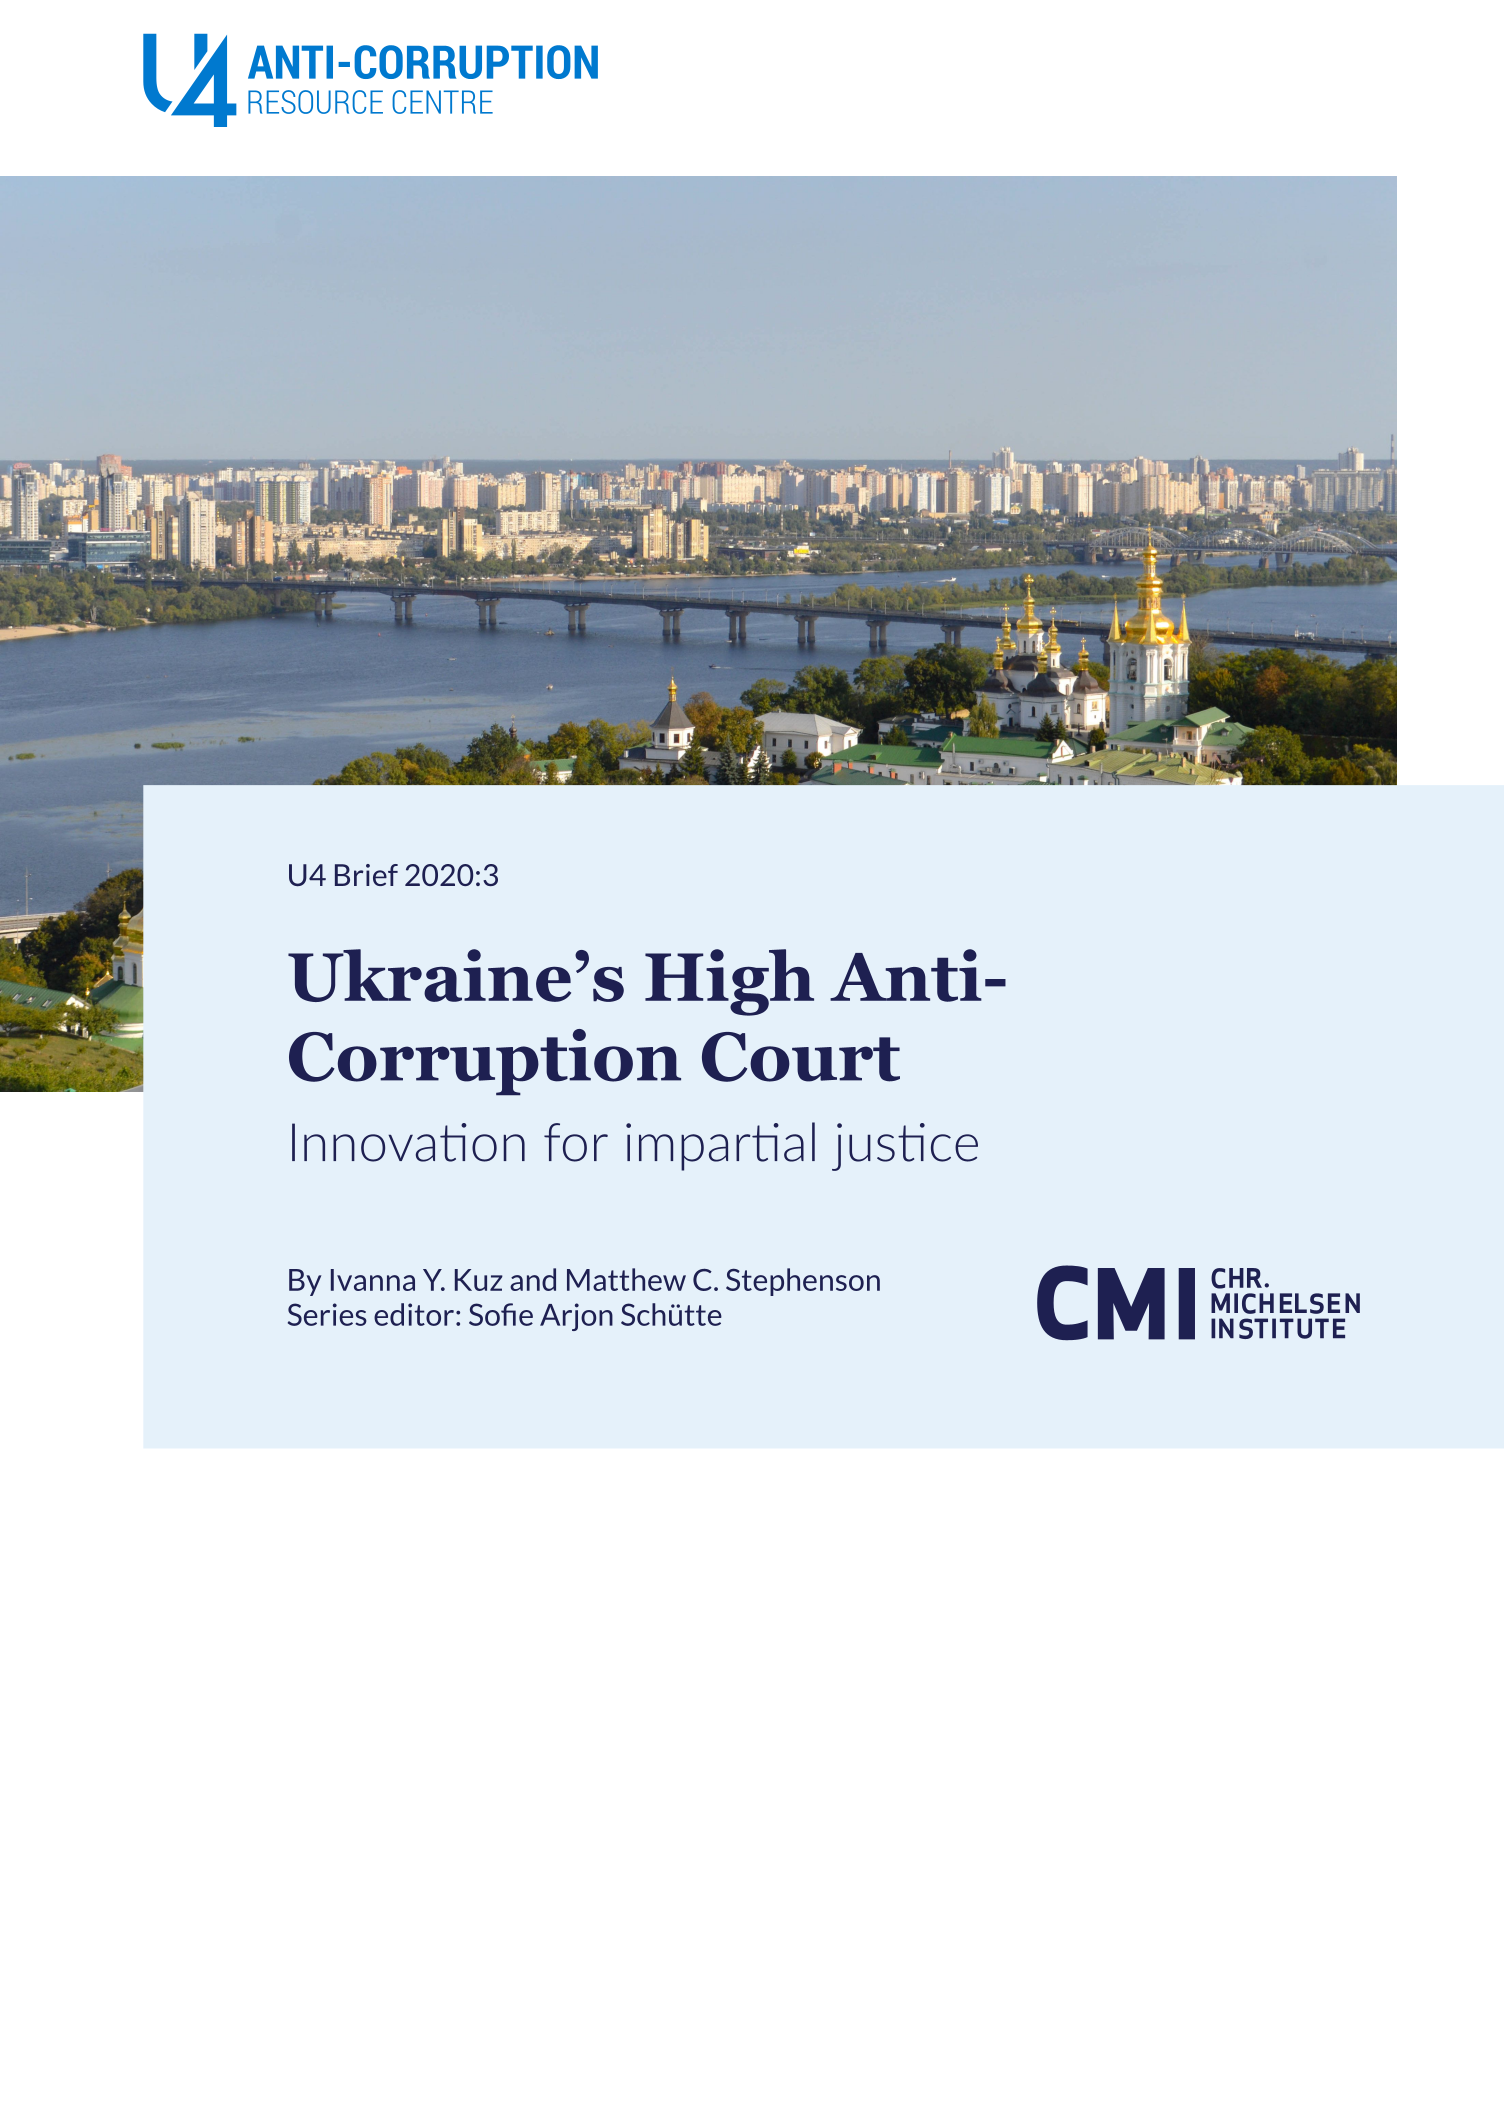 Ukraine’s High Anti-Corruption Court